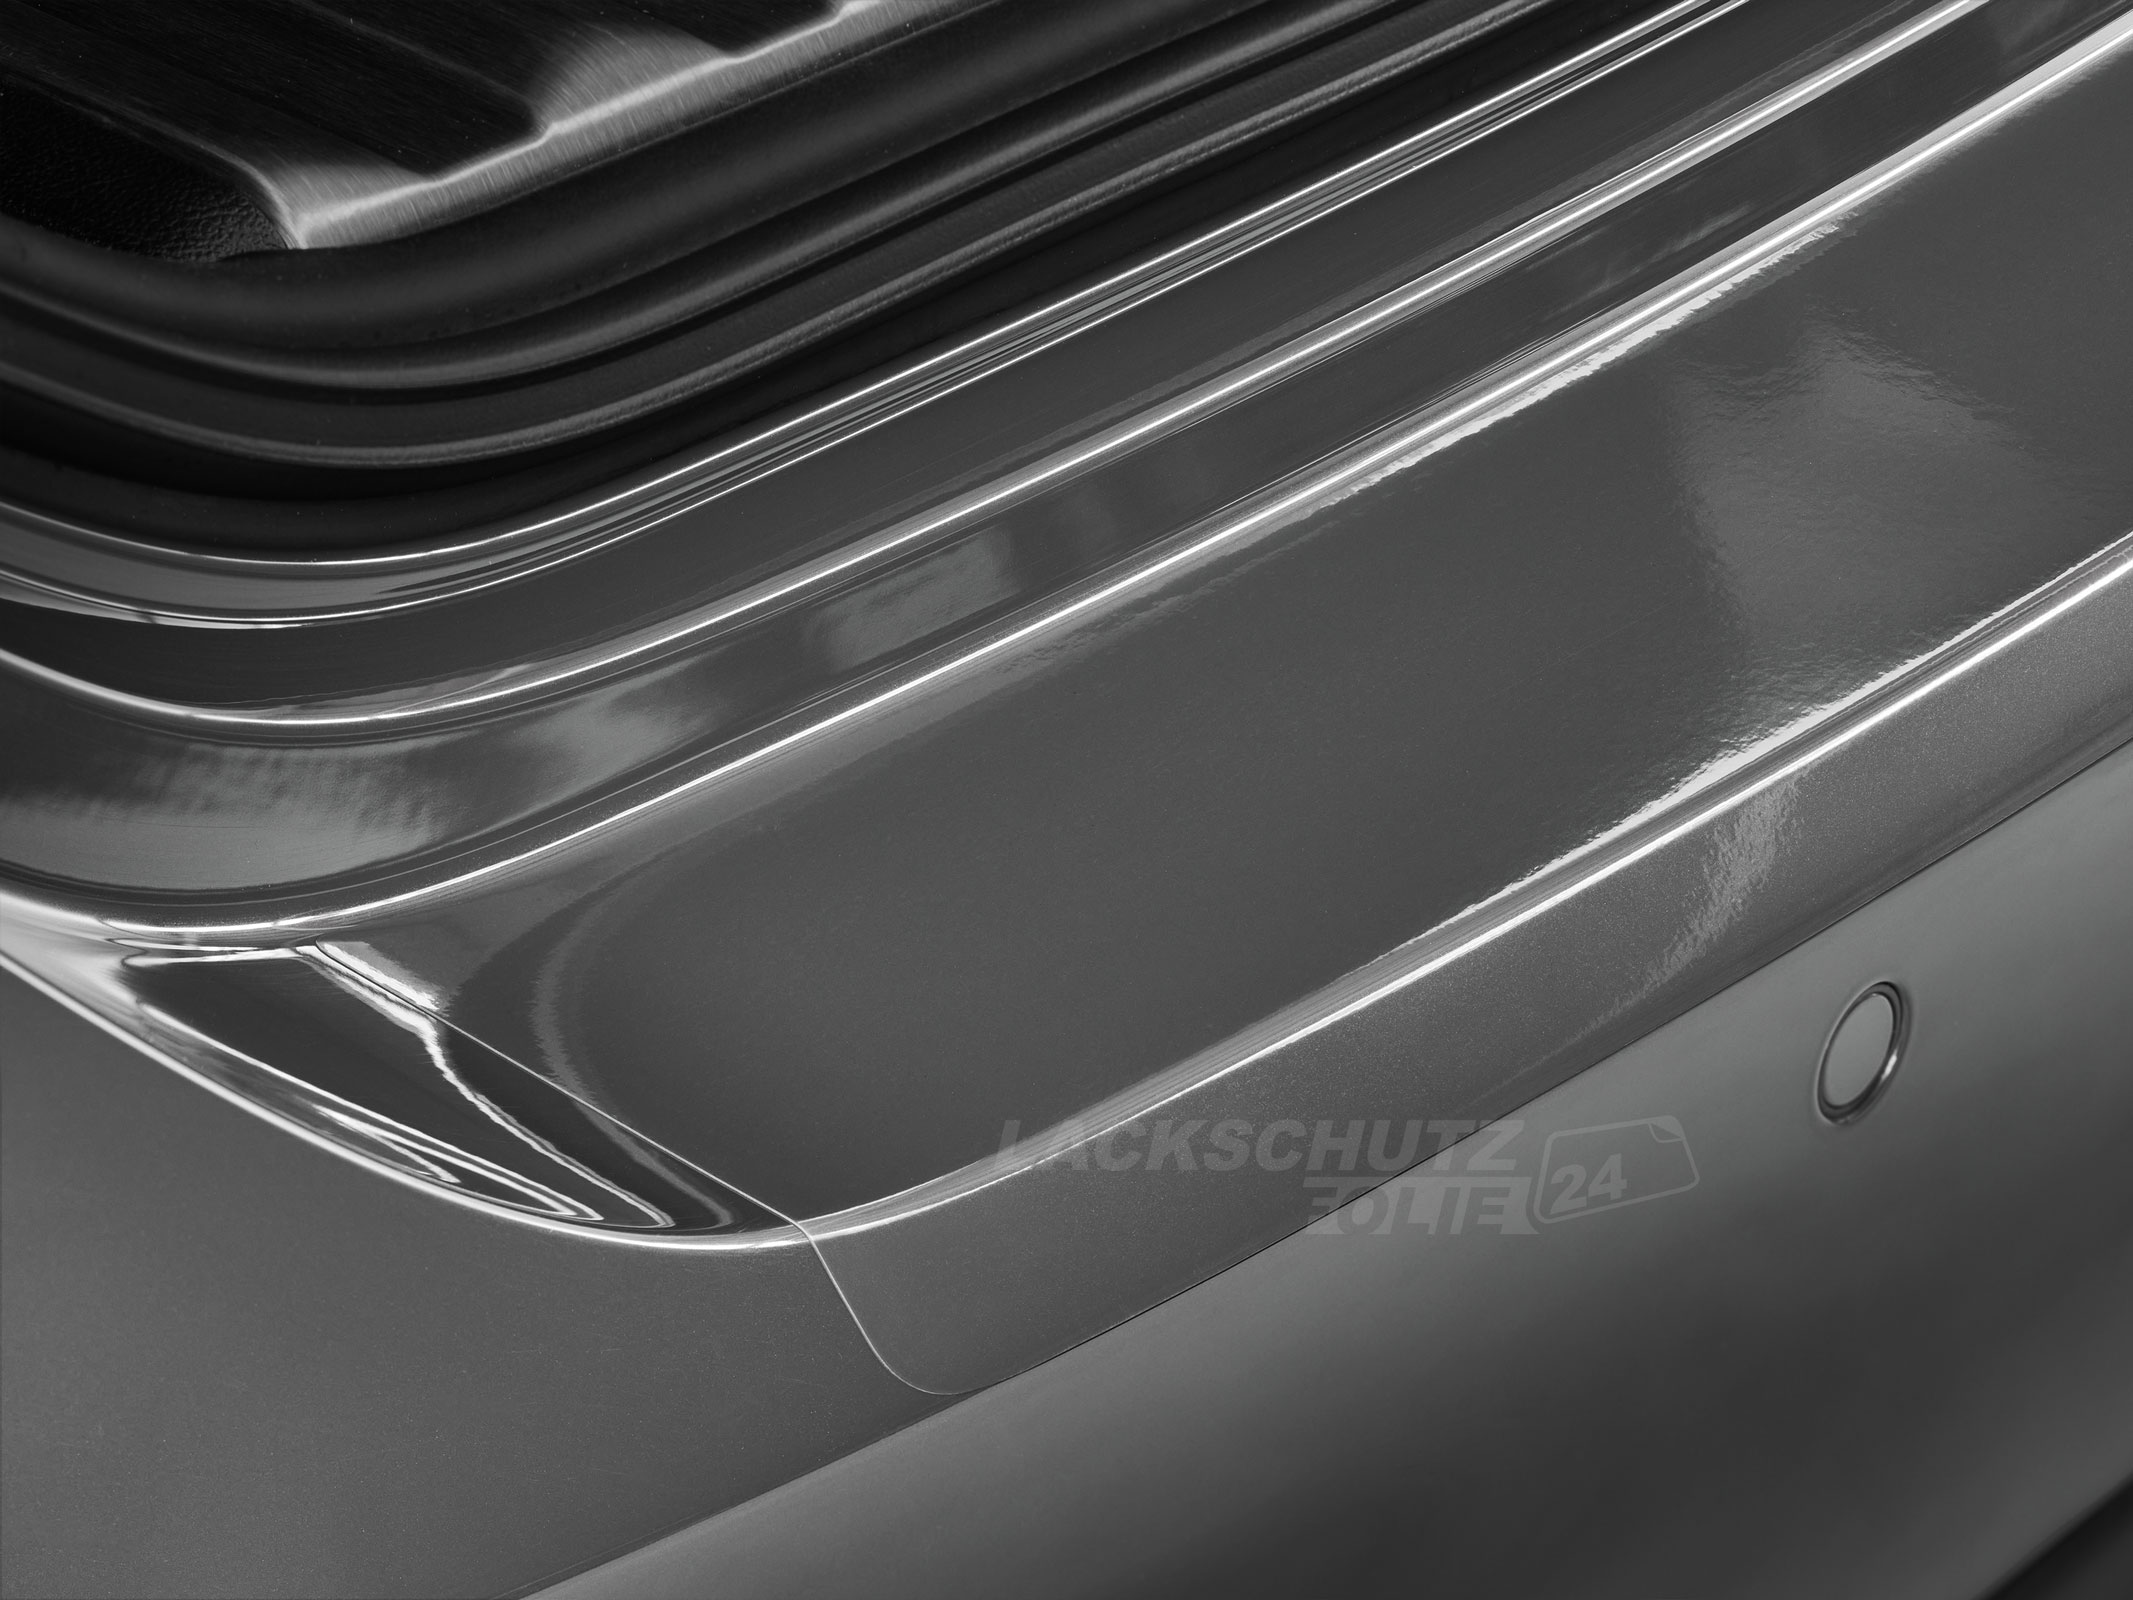 Ladekantenschutzfolie - Transparent Glatt Hochglänzend 150 µm stark für BMW X5 Typ G05, ab BJ 11/2018